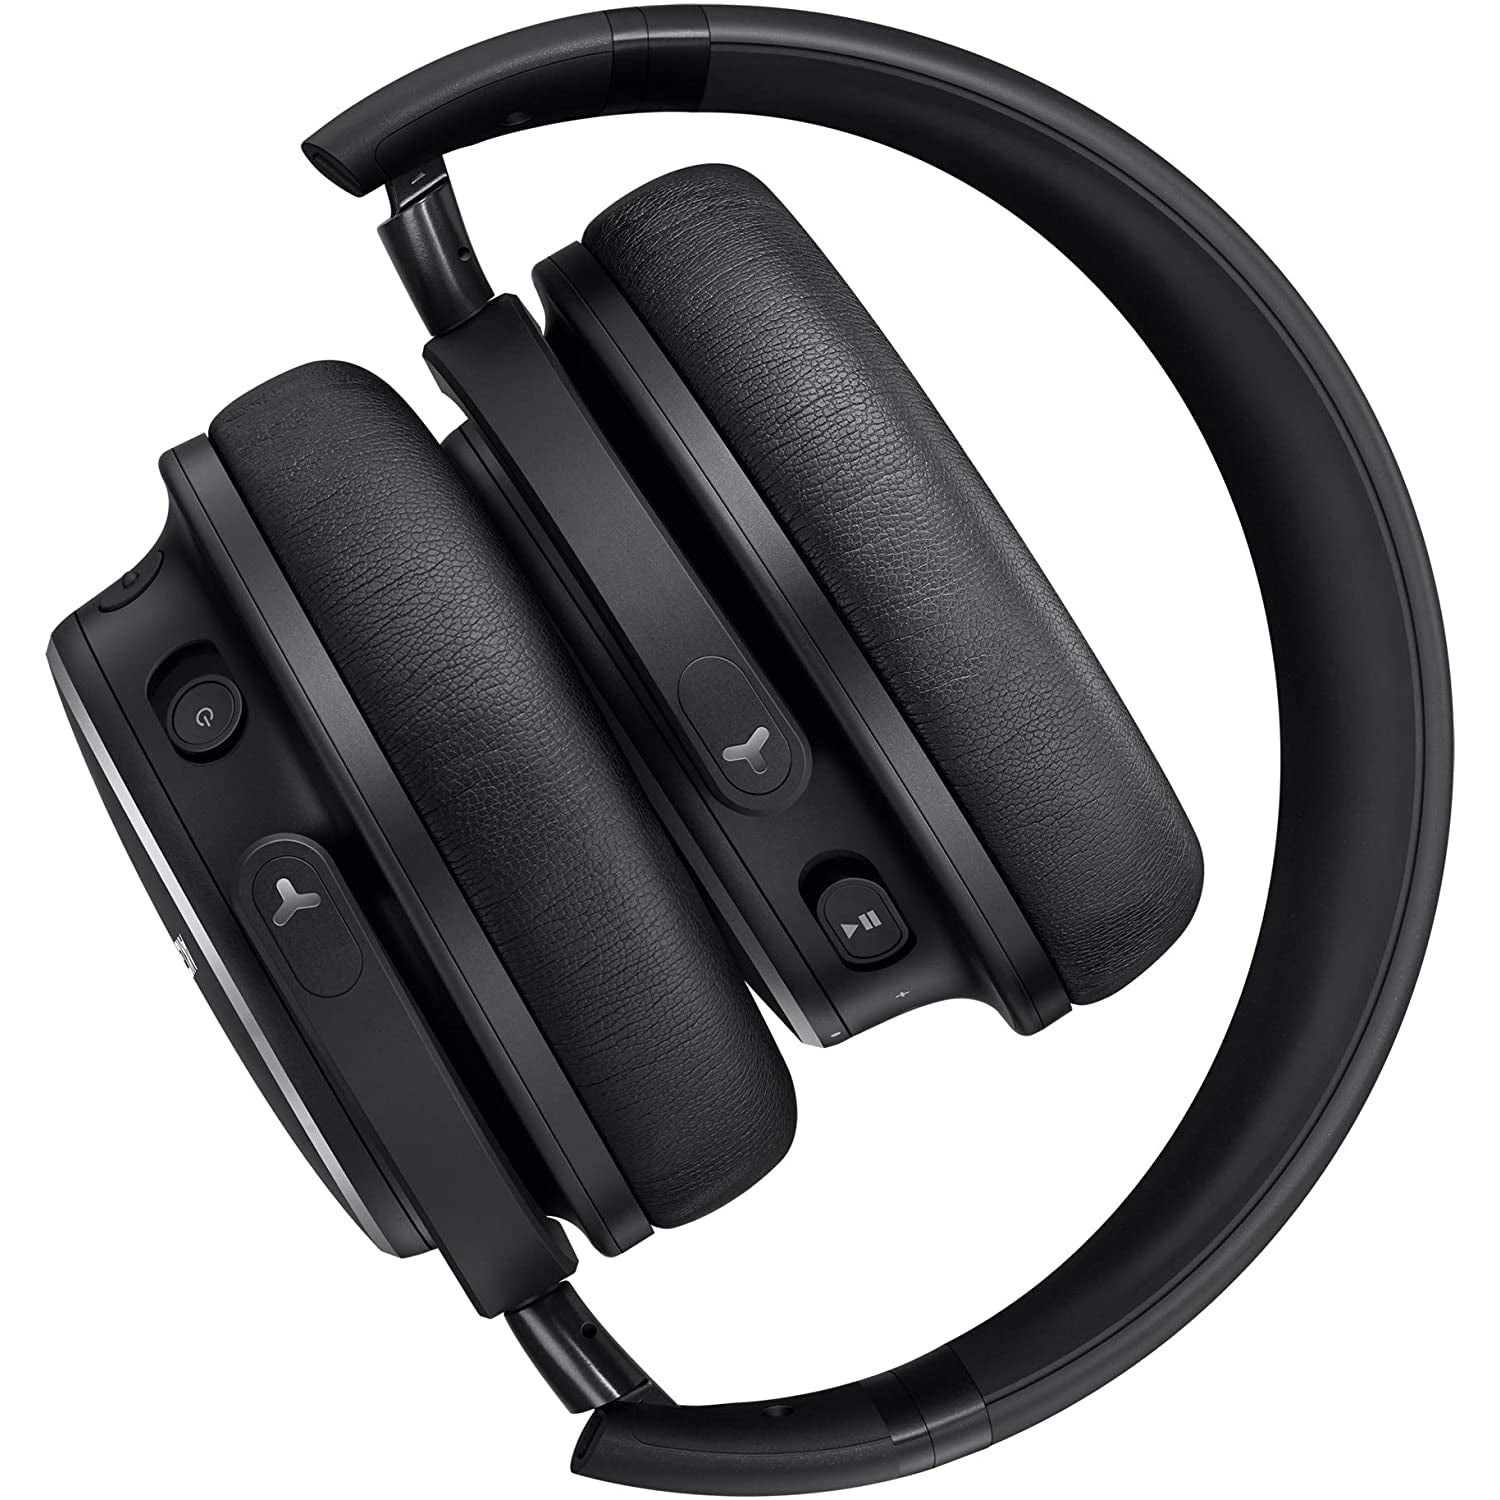 AKG Y600 NC Wireless Over Ear Headphones, Black